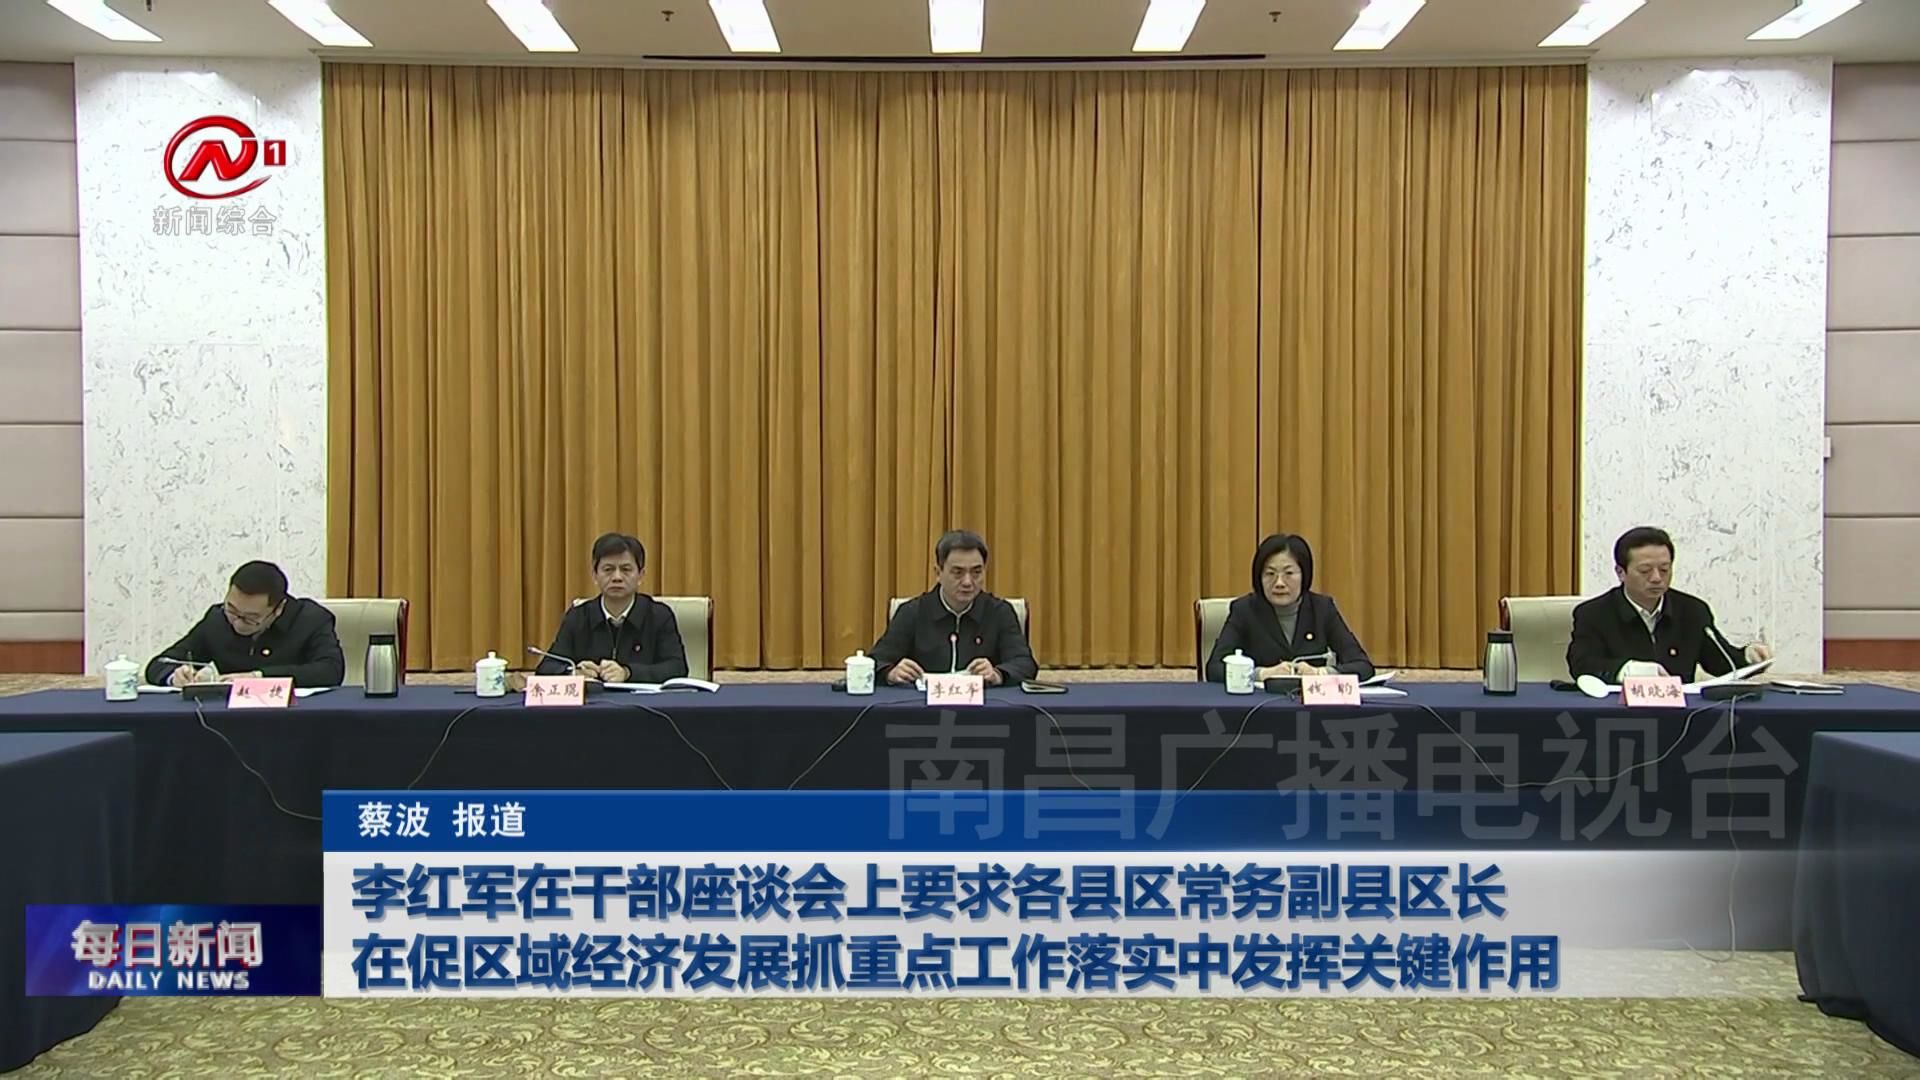 李红军在干部座谈会上要求各县区常务副县区长 在促区域经济发展抓重点工作落实中发挥关键作用